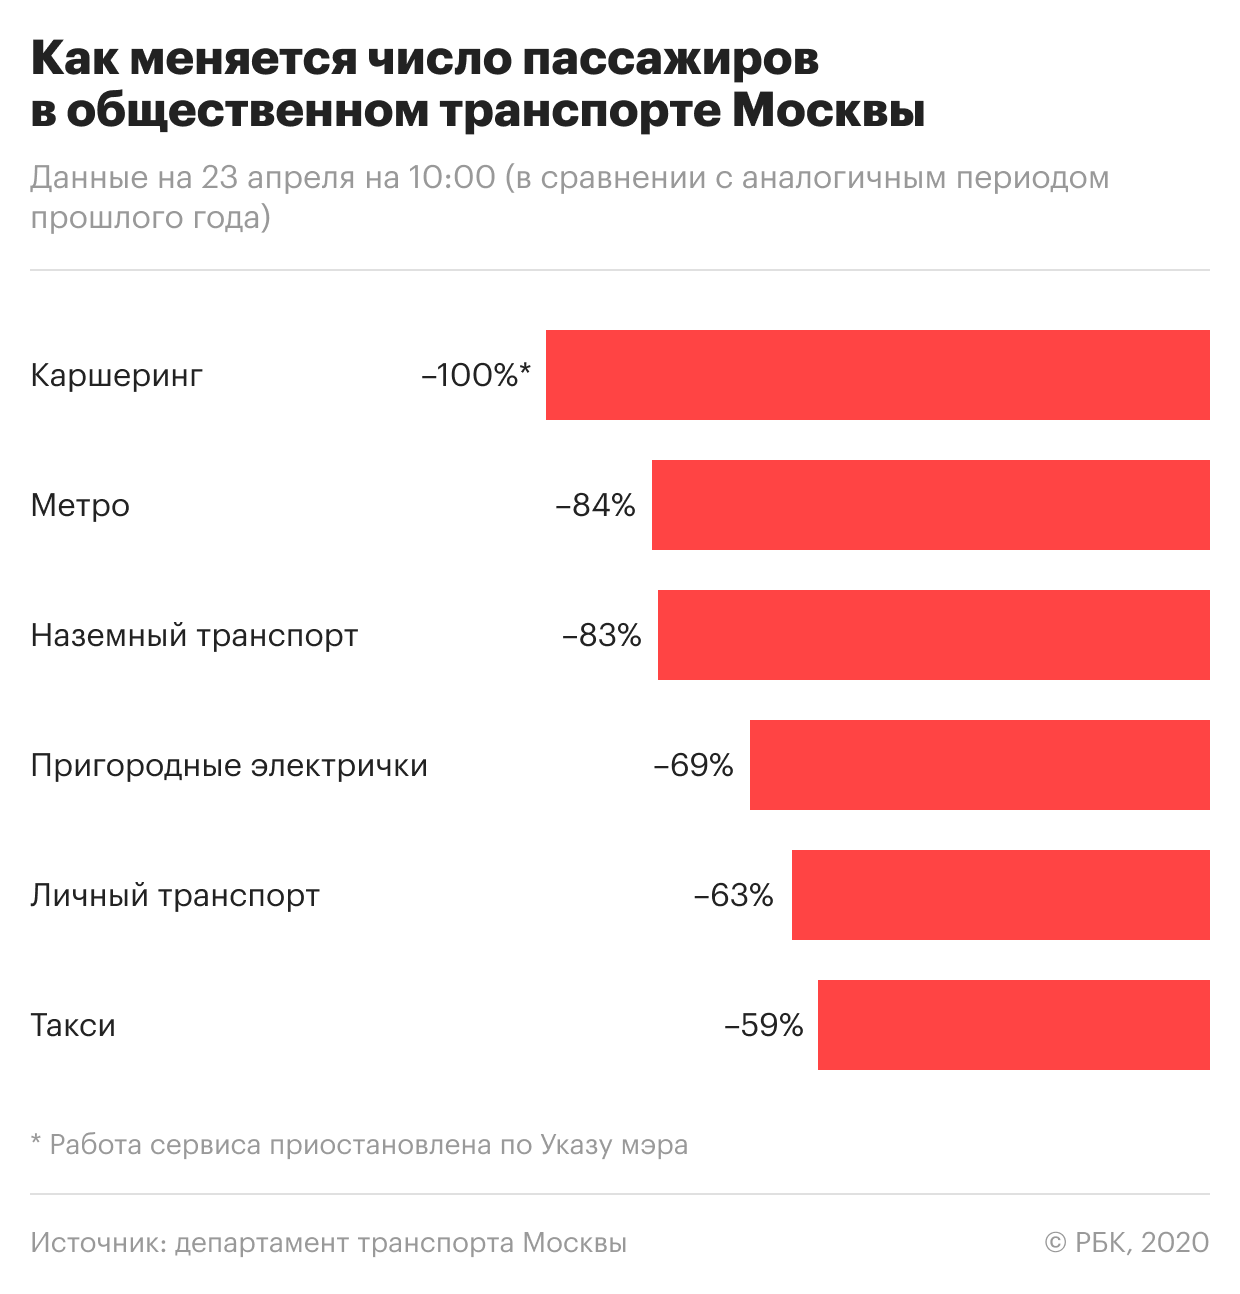 Около 40% москвичей сочли такси и каршеринг опасными во время пандемии